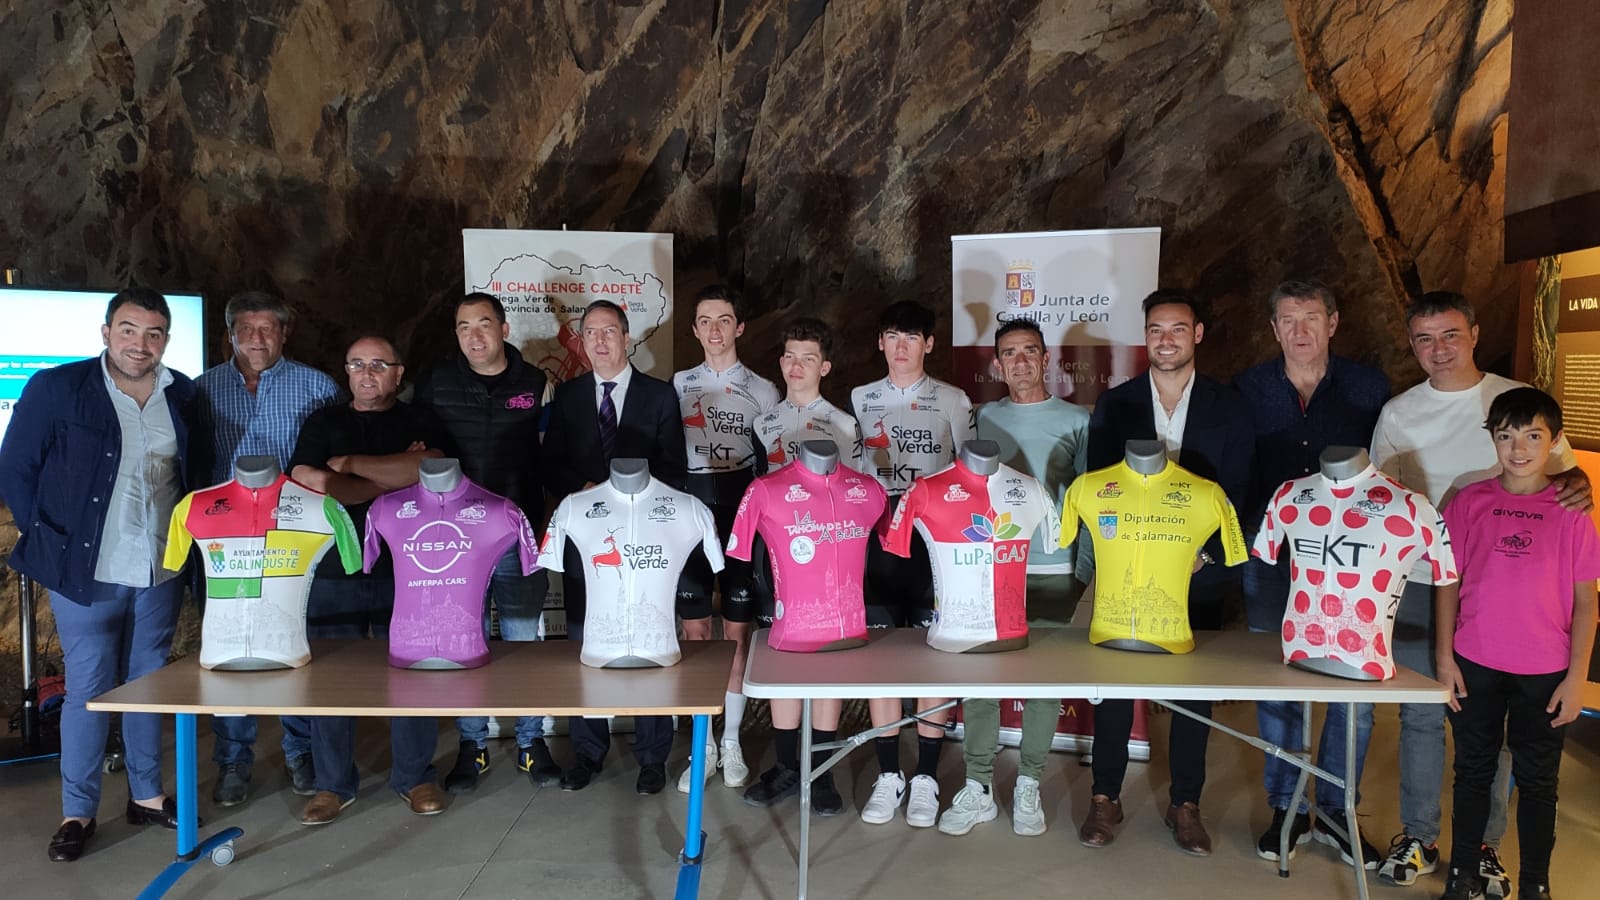 O Sítio Siega Verde será a largada do Salamanca Cadet Cycling Challenge, com equipas de Espanha e Portugal ✔️